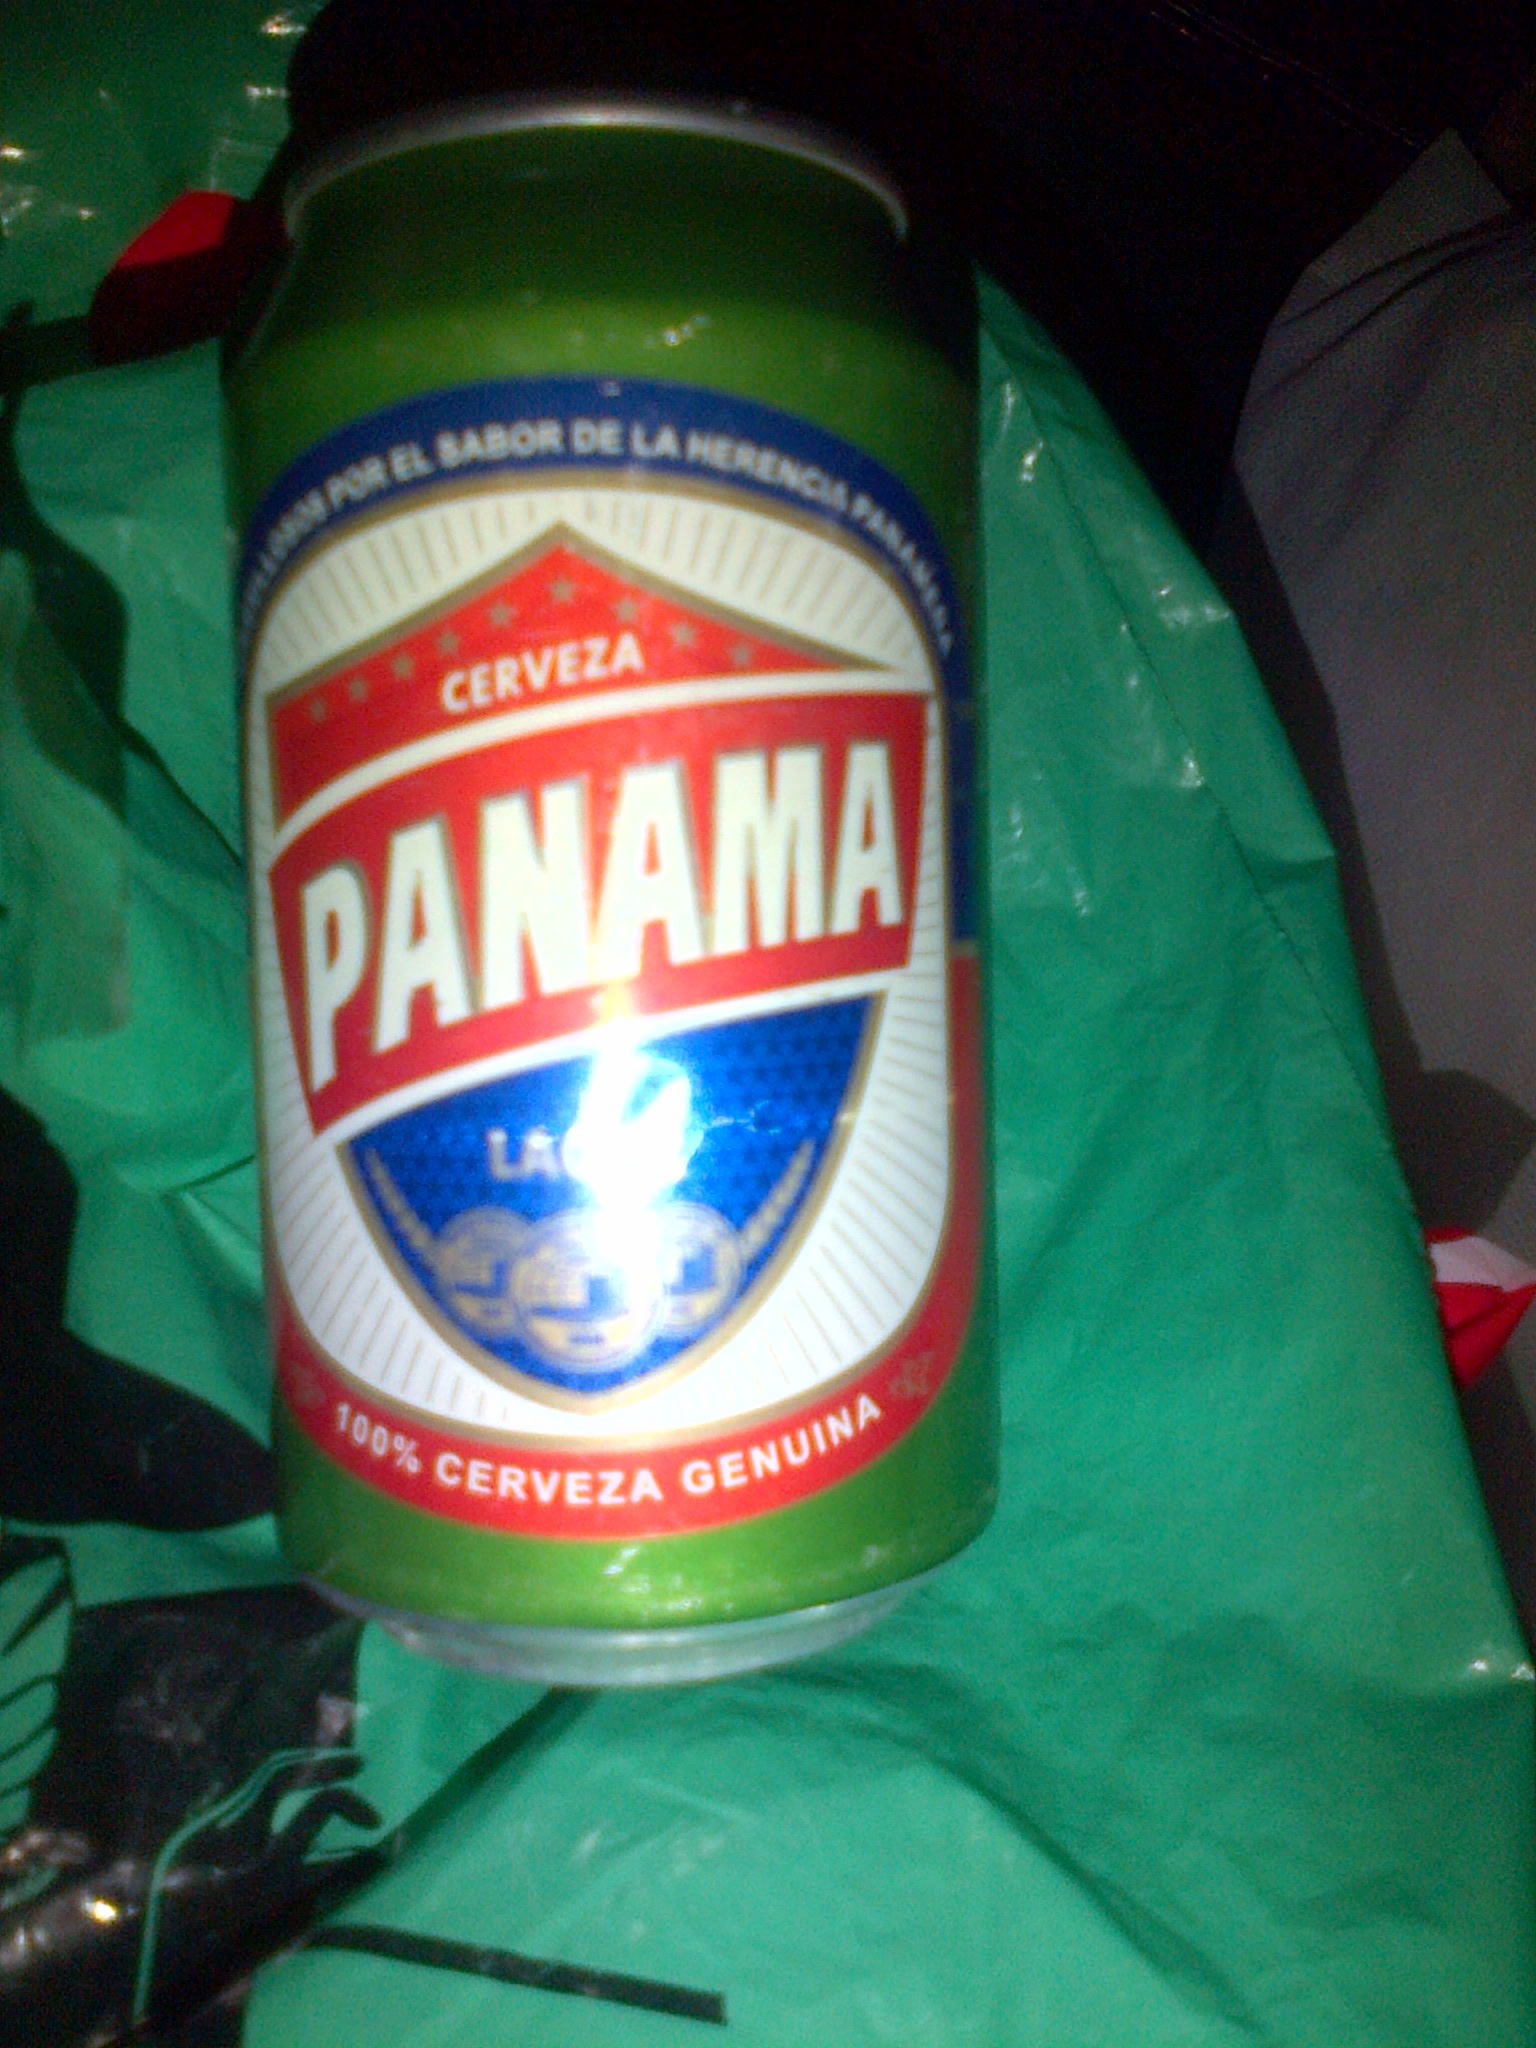 Cerveza Panama.jpg